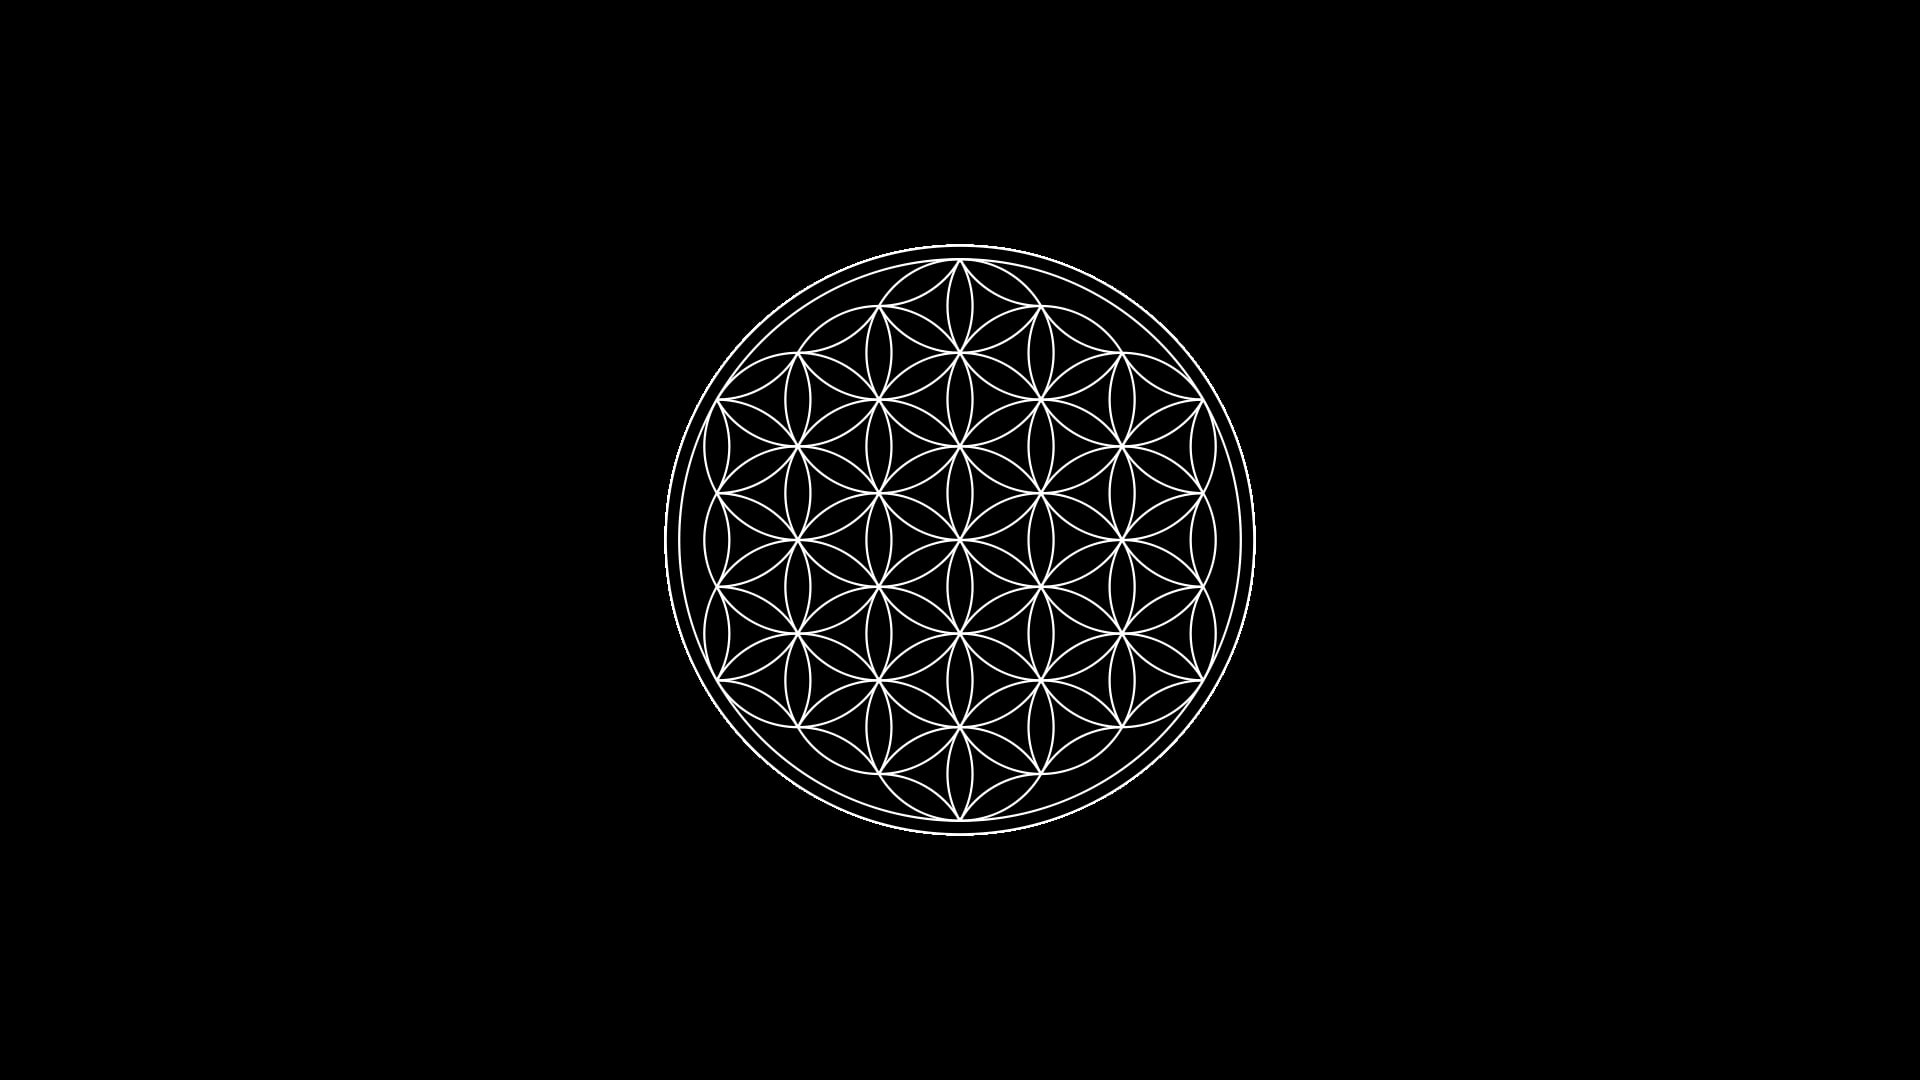 black background, circle, Flower Of Life, minimalism, Sacred Geometry